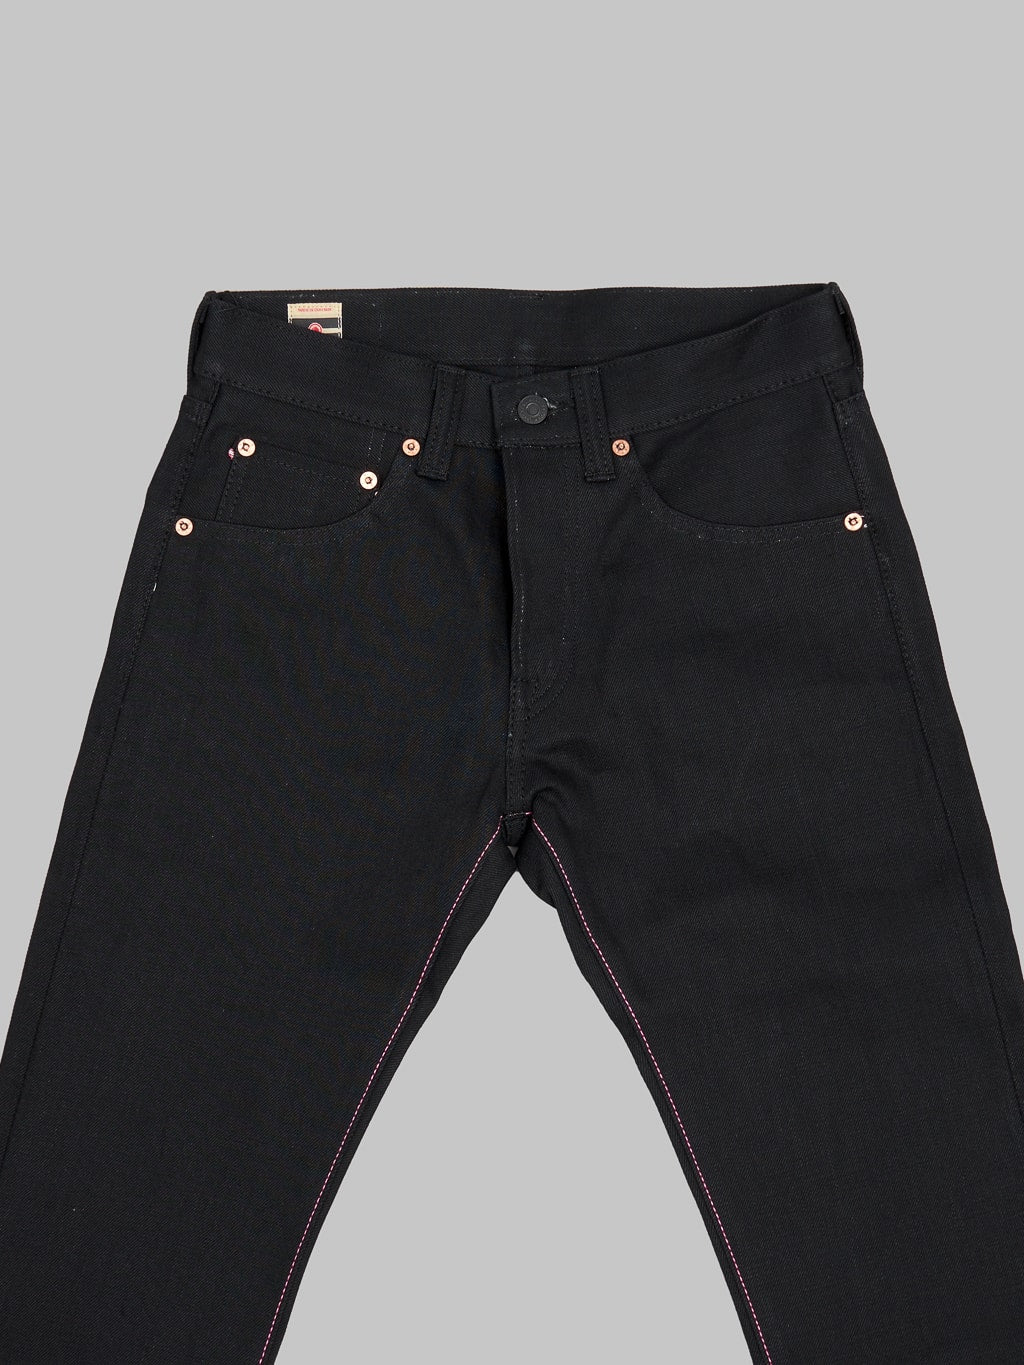 Momotaro 0605 B Black x Black Natural Tapered Jeans  front details